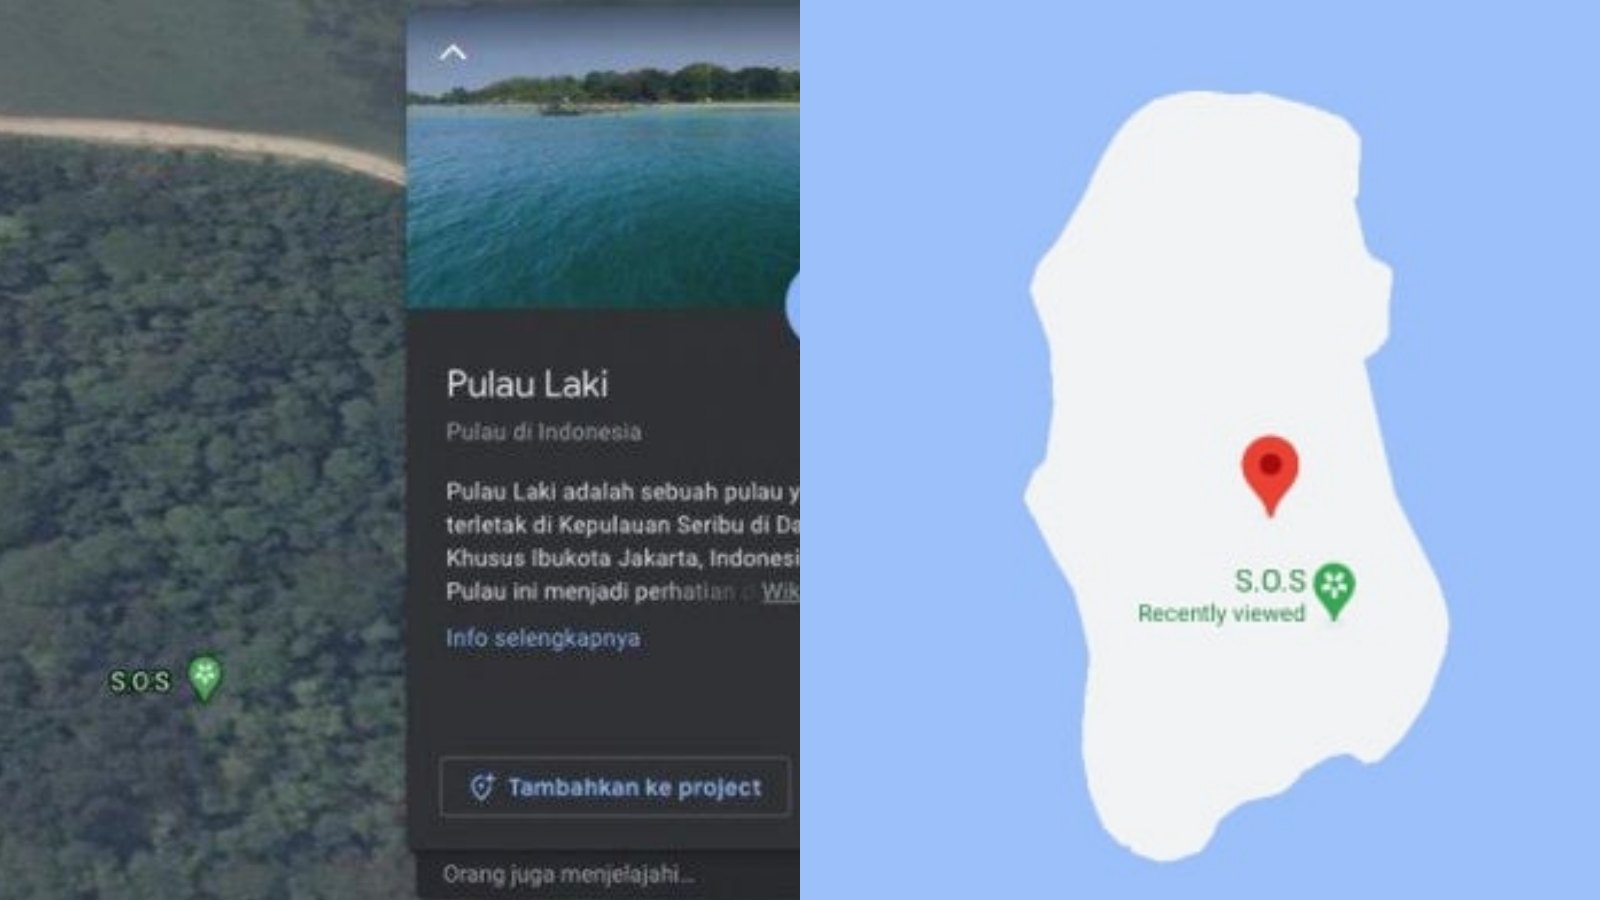 Arti dan Makna Tanda SOS, Baru-baru ini Viral Muncul di Pulau Laki Dekat Lokasi Jatuh Sriwijaya Air